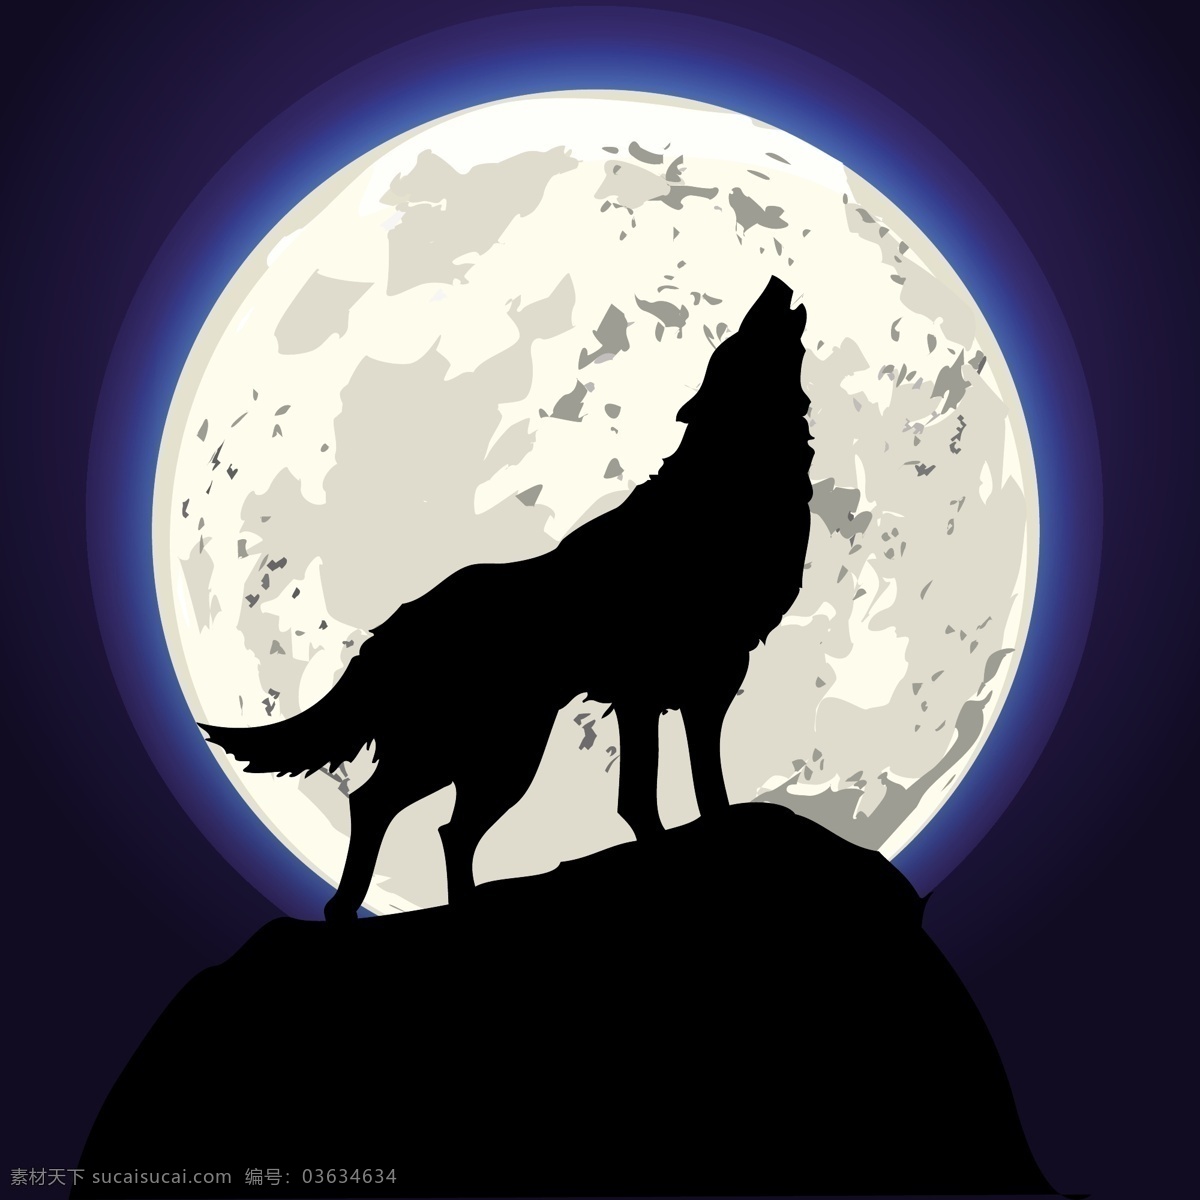 野狼 狼 苍狼 动物世界 满月 圆月 月亮 手绘 狼狗 野生动物 哺乳动物 生物世界